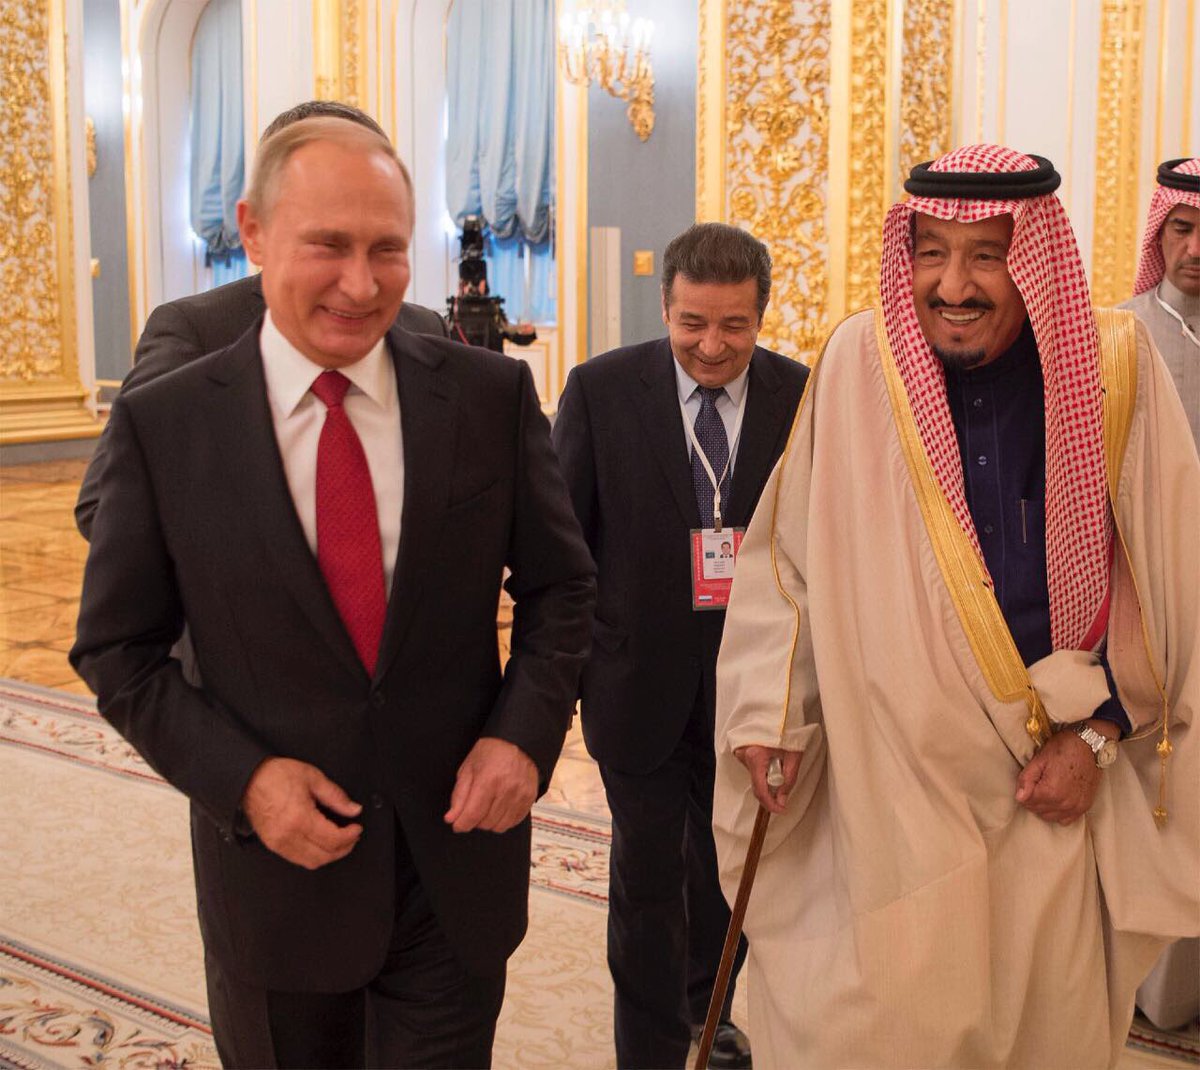 الملك في برقية لـ “بوتين” : مباحثاتنا أكدت العزم على تعزيز العلاقات واستمرار التنسيق